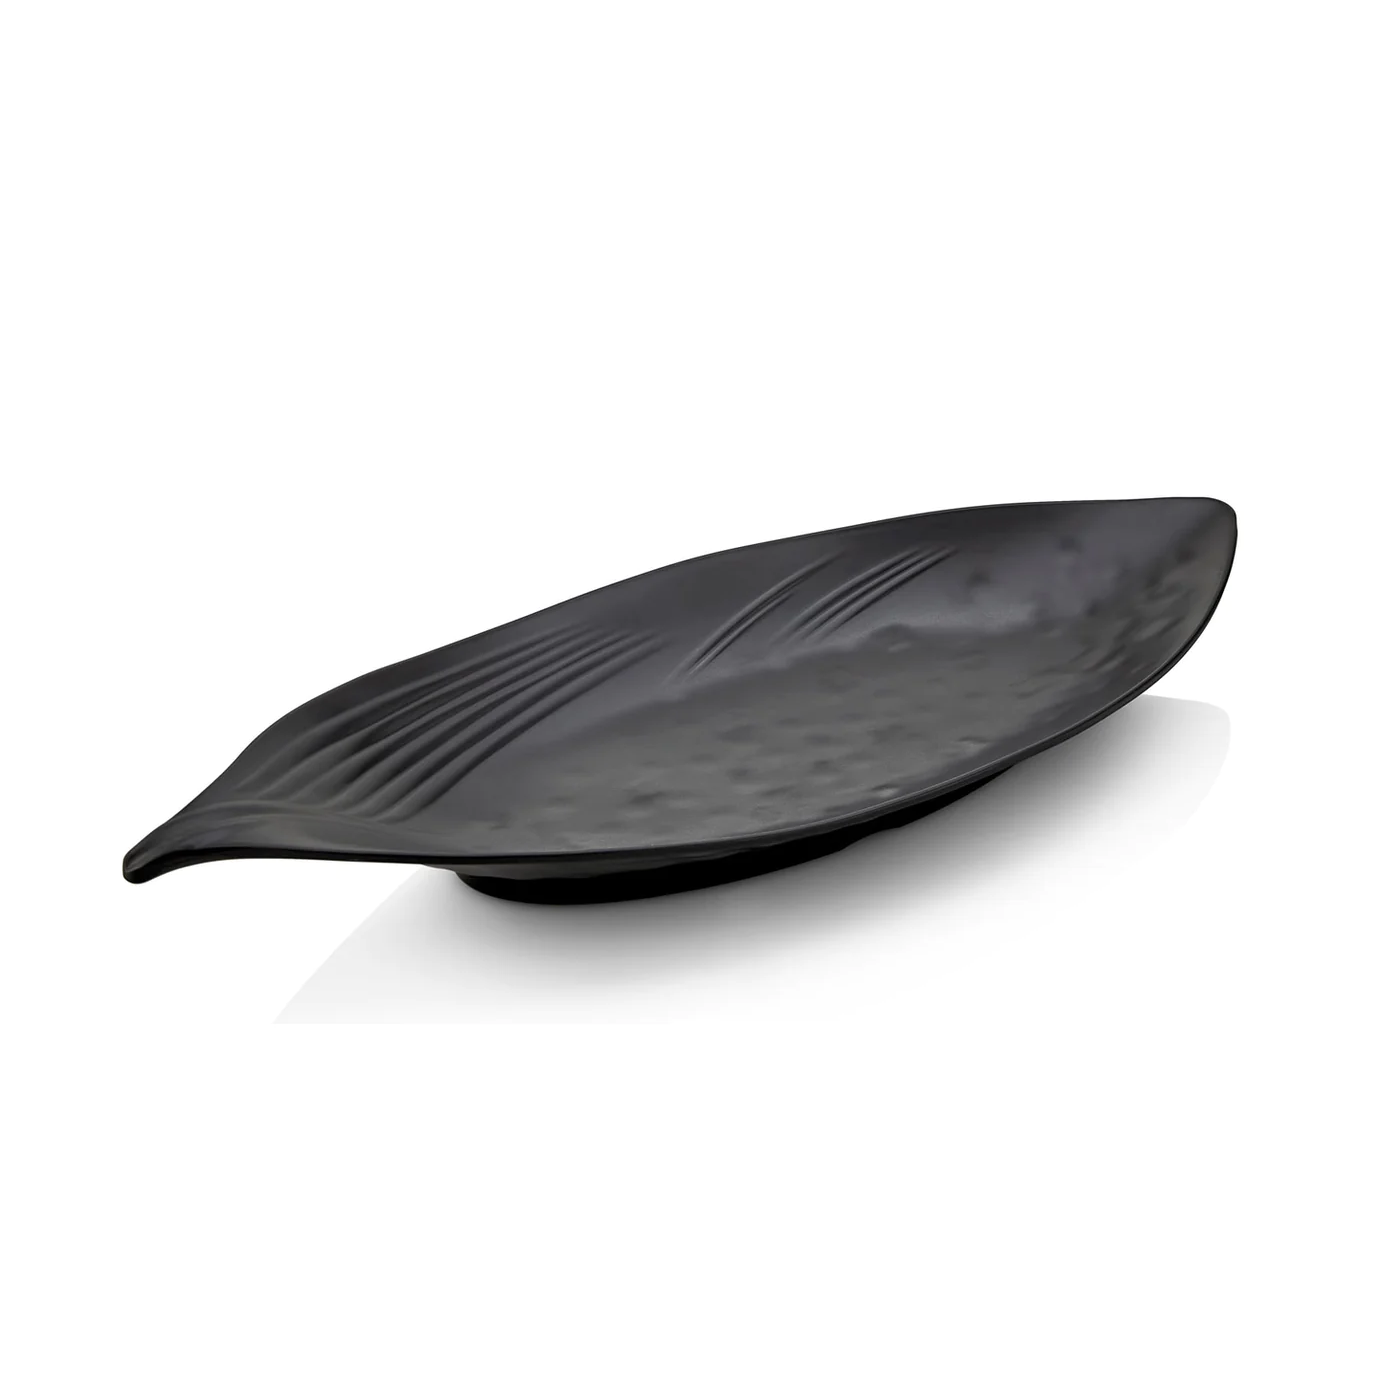 Melamine leaf shape oval plate 27 cm - Lunaz Shop